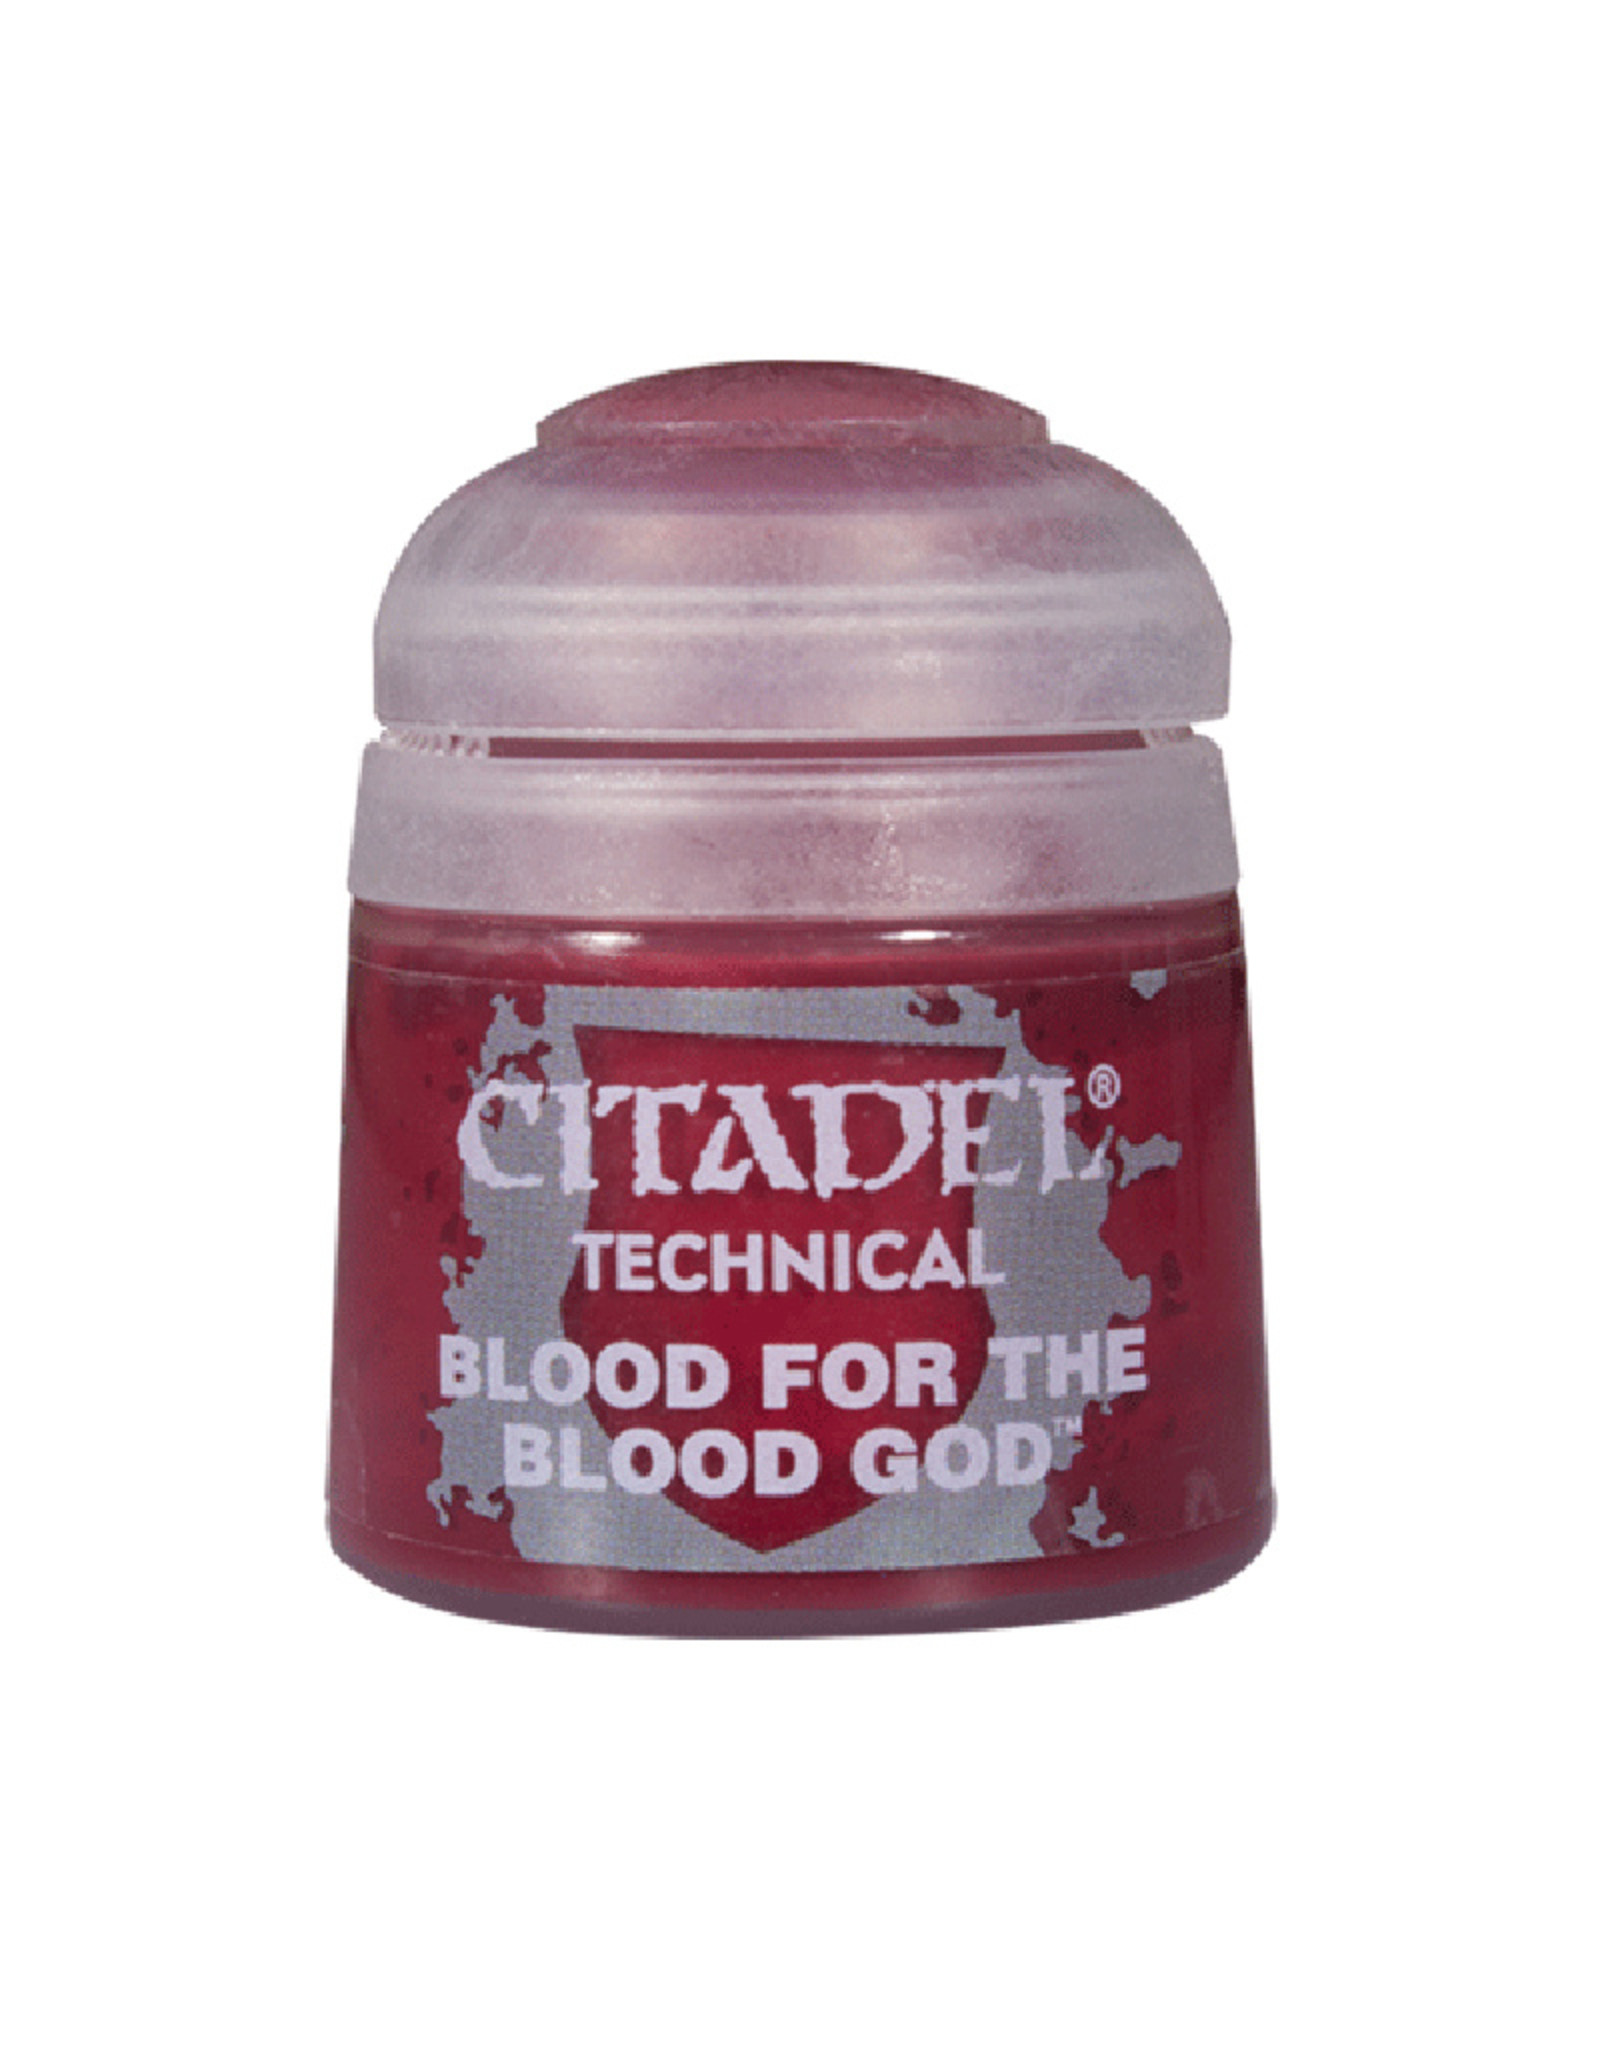 Games Workshop Citadel Technical: Blood for the Blood God